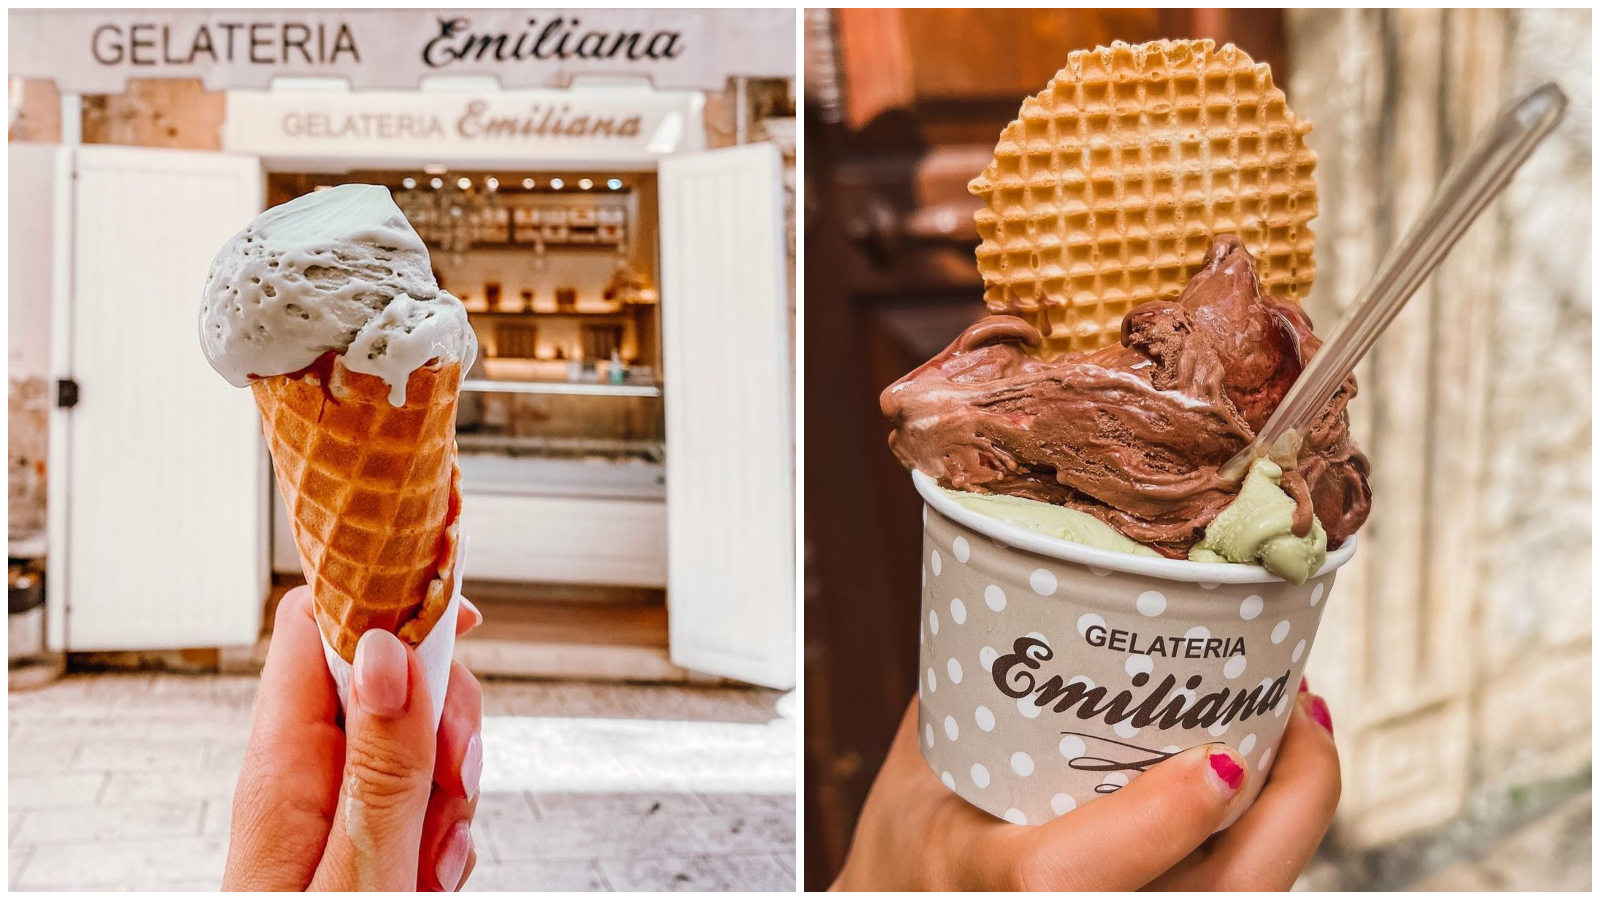 Za ovaj sladoled kažu da je najbolji u Splitu